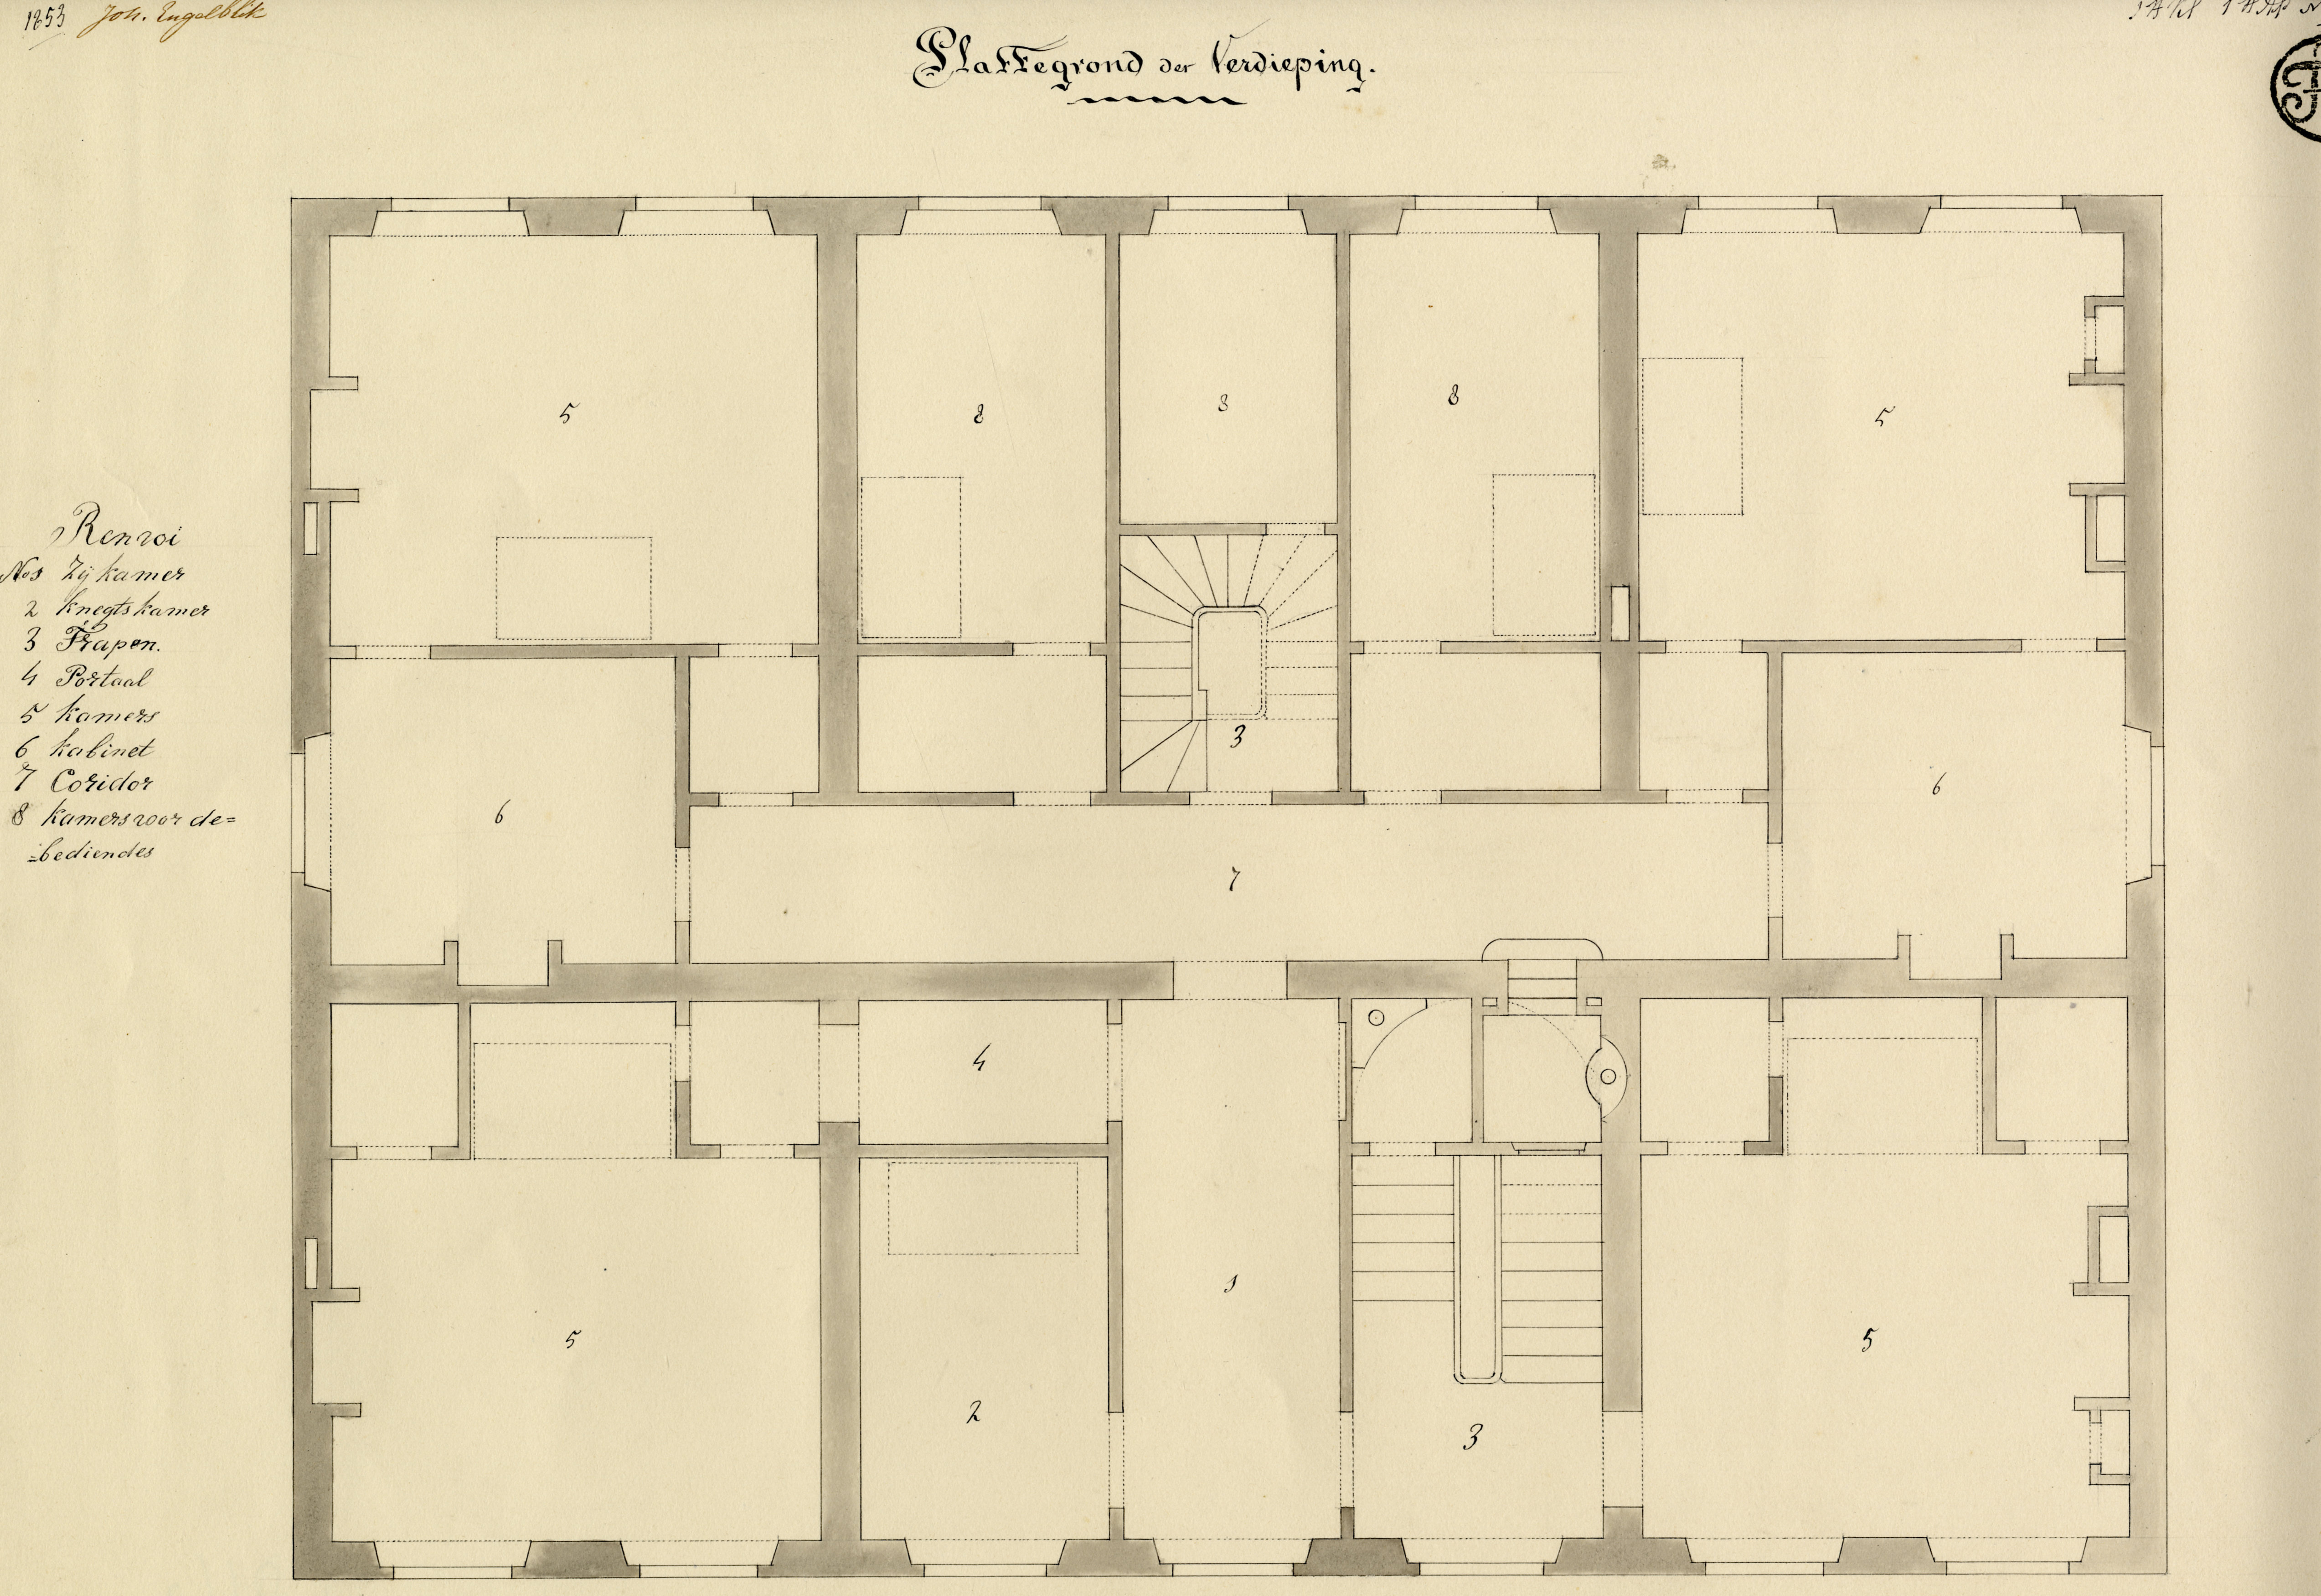 Plattegrond van een fantasie-herenhuis, Joh. Engelblik, 1853. GAG.Arch.Tekenschool, inv.nr. 99.